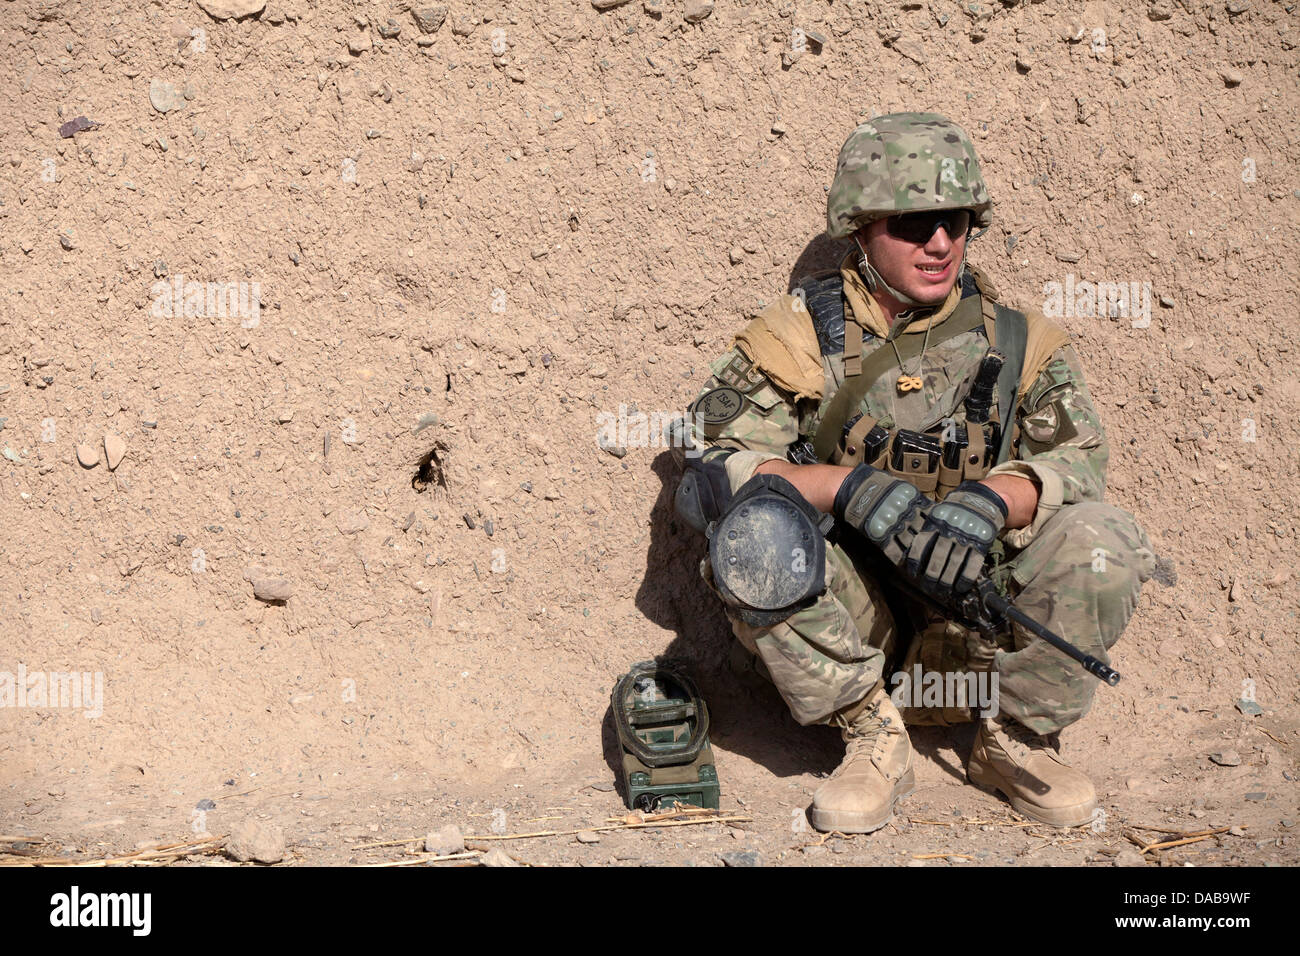 Ein georgischer Soldaten zugewiesen der 33. Licht-Infanterie-Bataillon nimmt eine Auszeit vom Fuß Patrouille während der Operation Northern Lion II 3. Juli 2013 in der Provinz Helmand, Afghanistan. Stockfoto